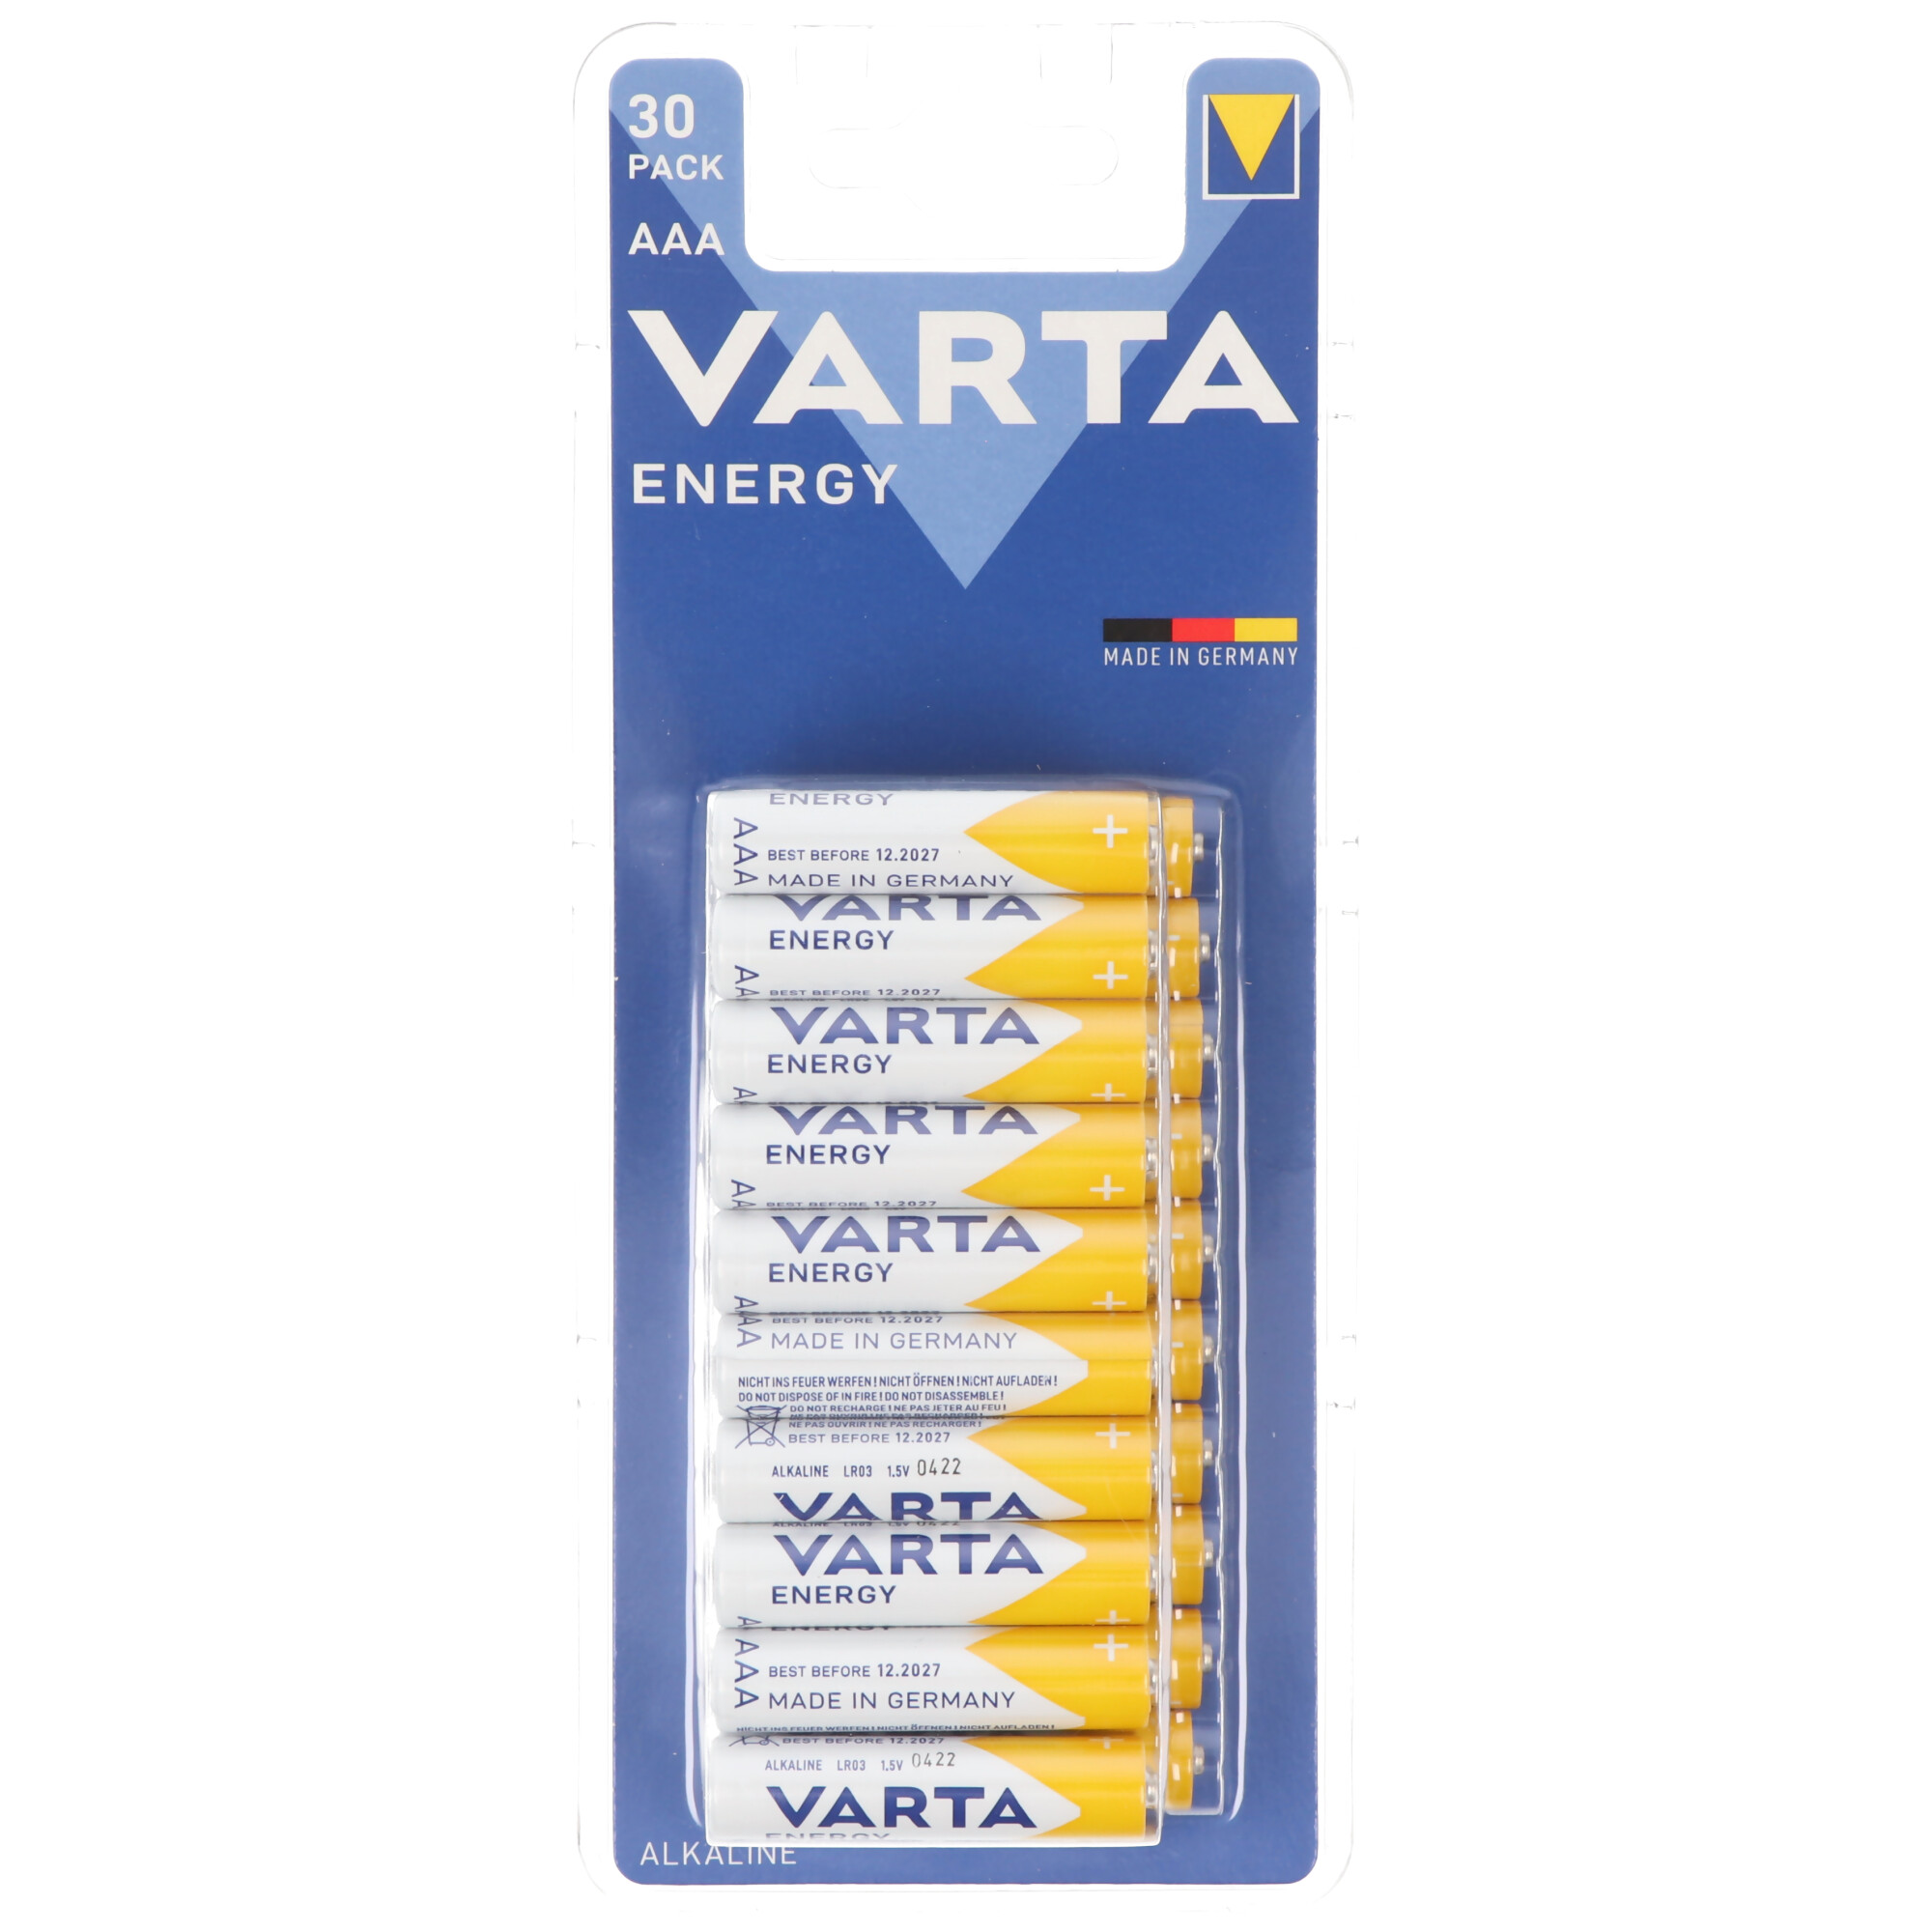 Varta Energy Batterie Alkaline, Micro, AAA, LR03, 1.5V 30er Pack